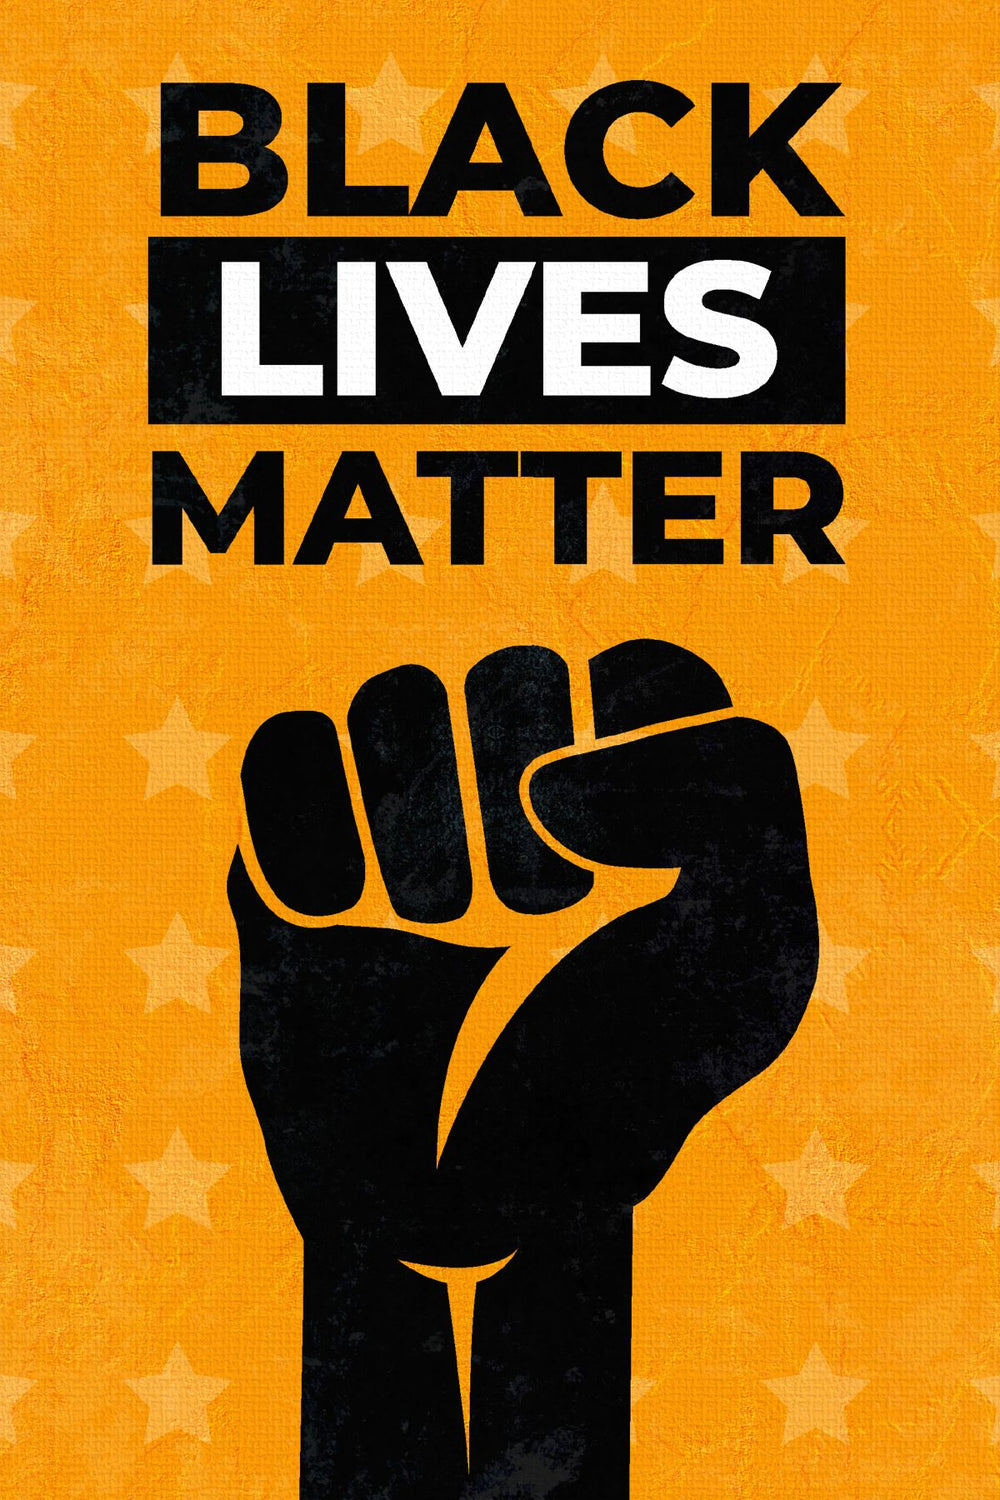 Blacks Lives Matter